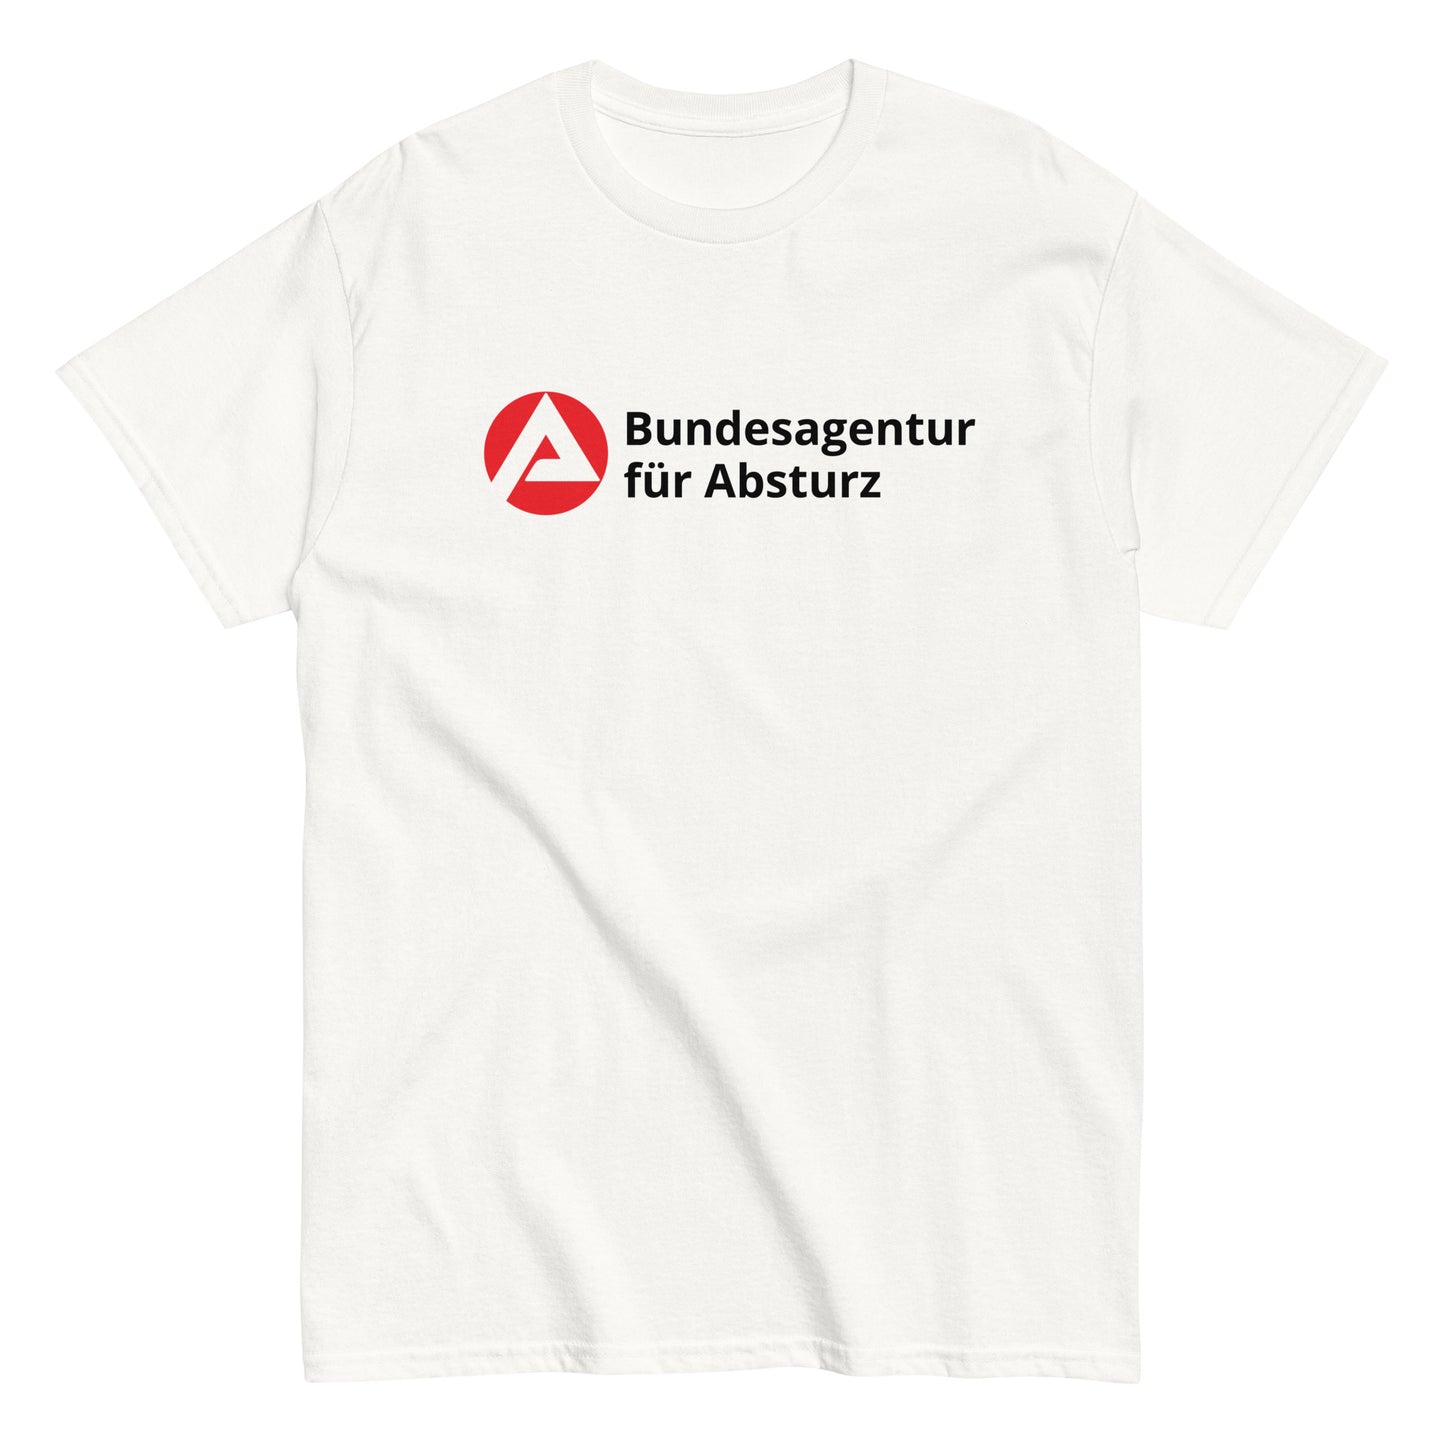 Bundesagentur für Absturz T-Shirt